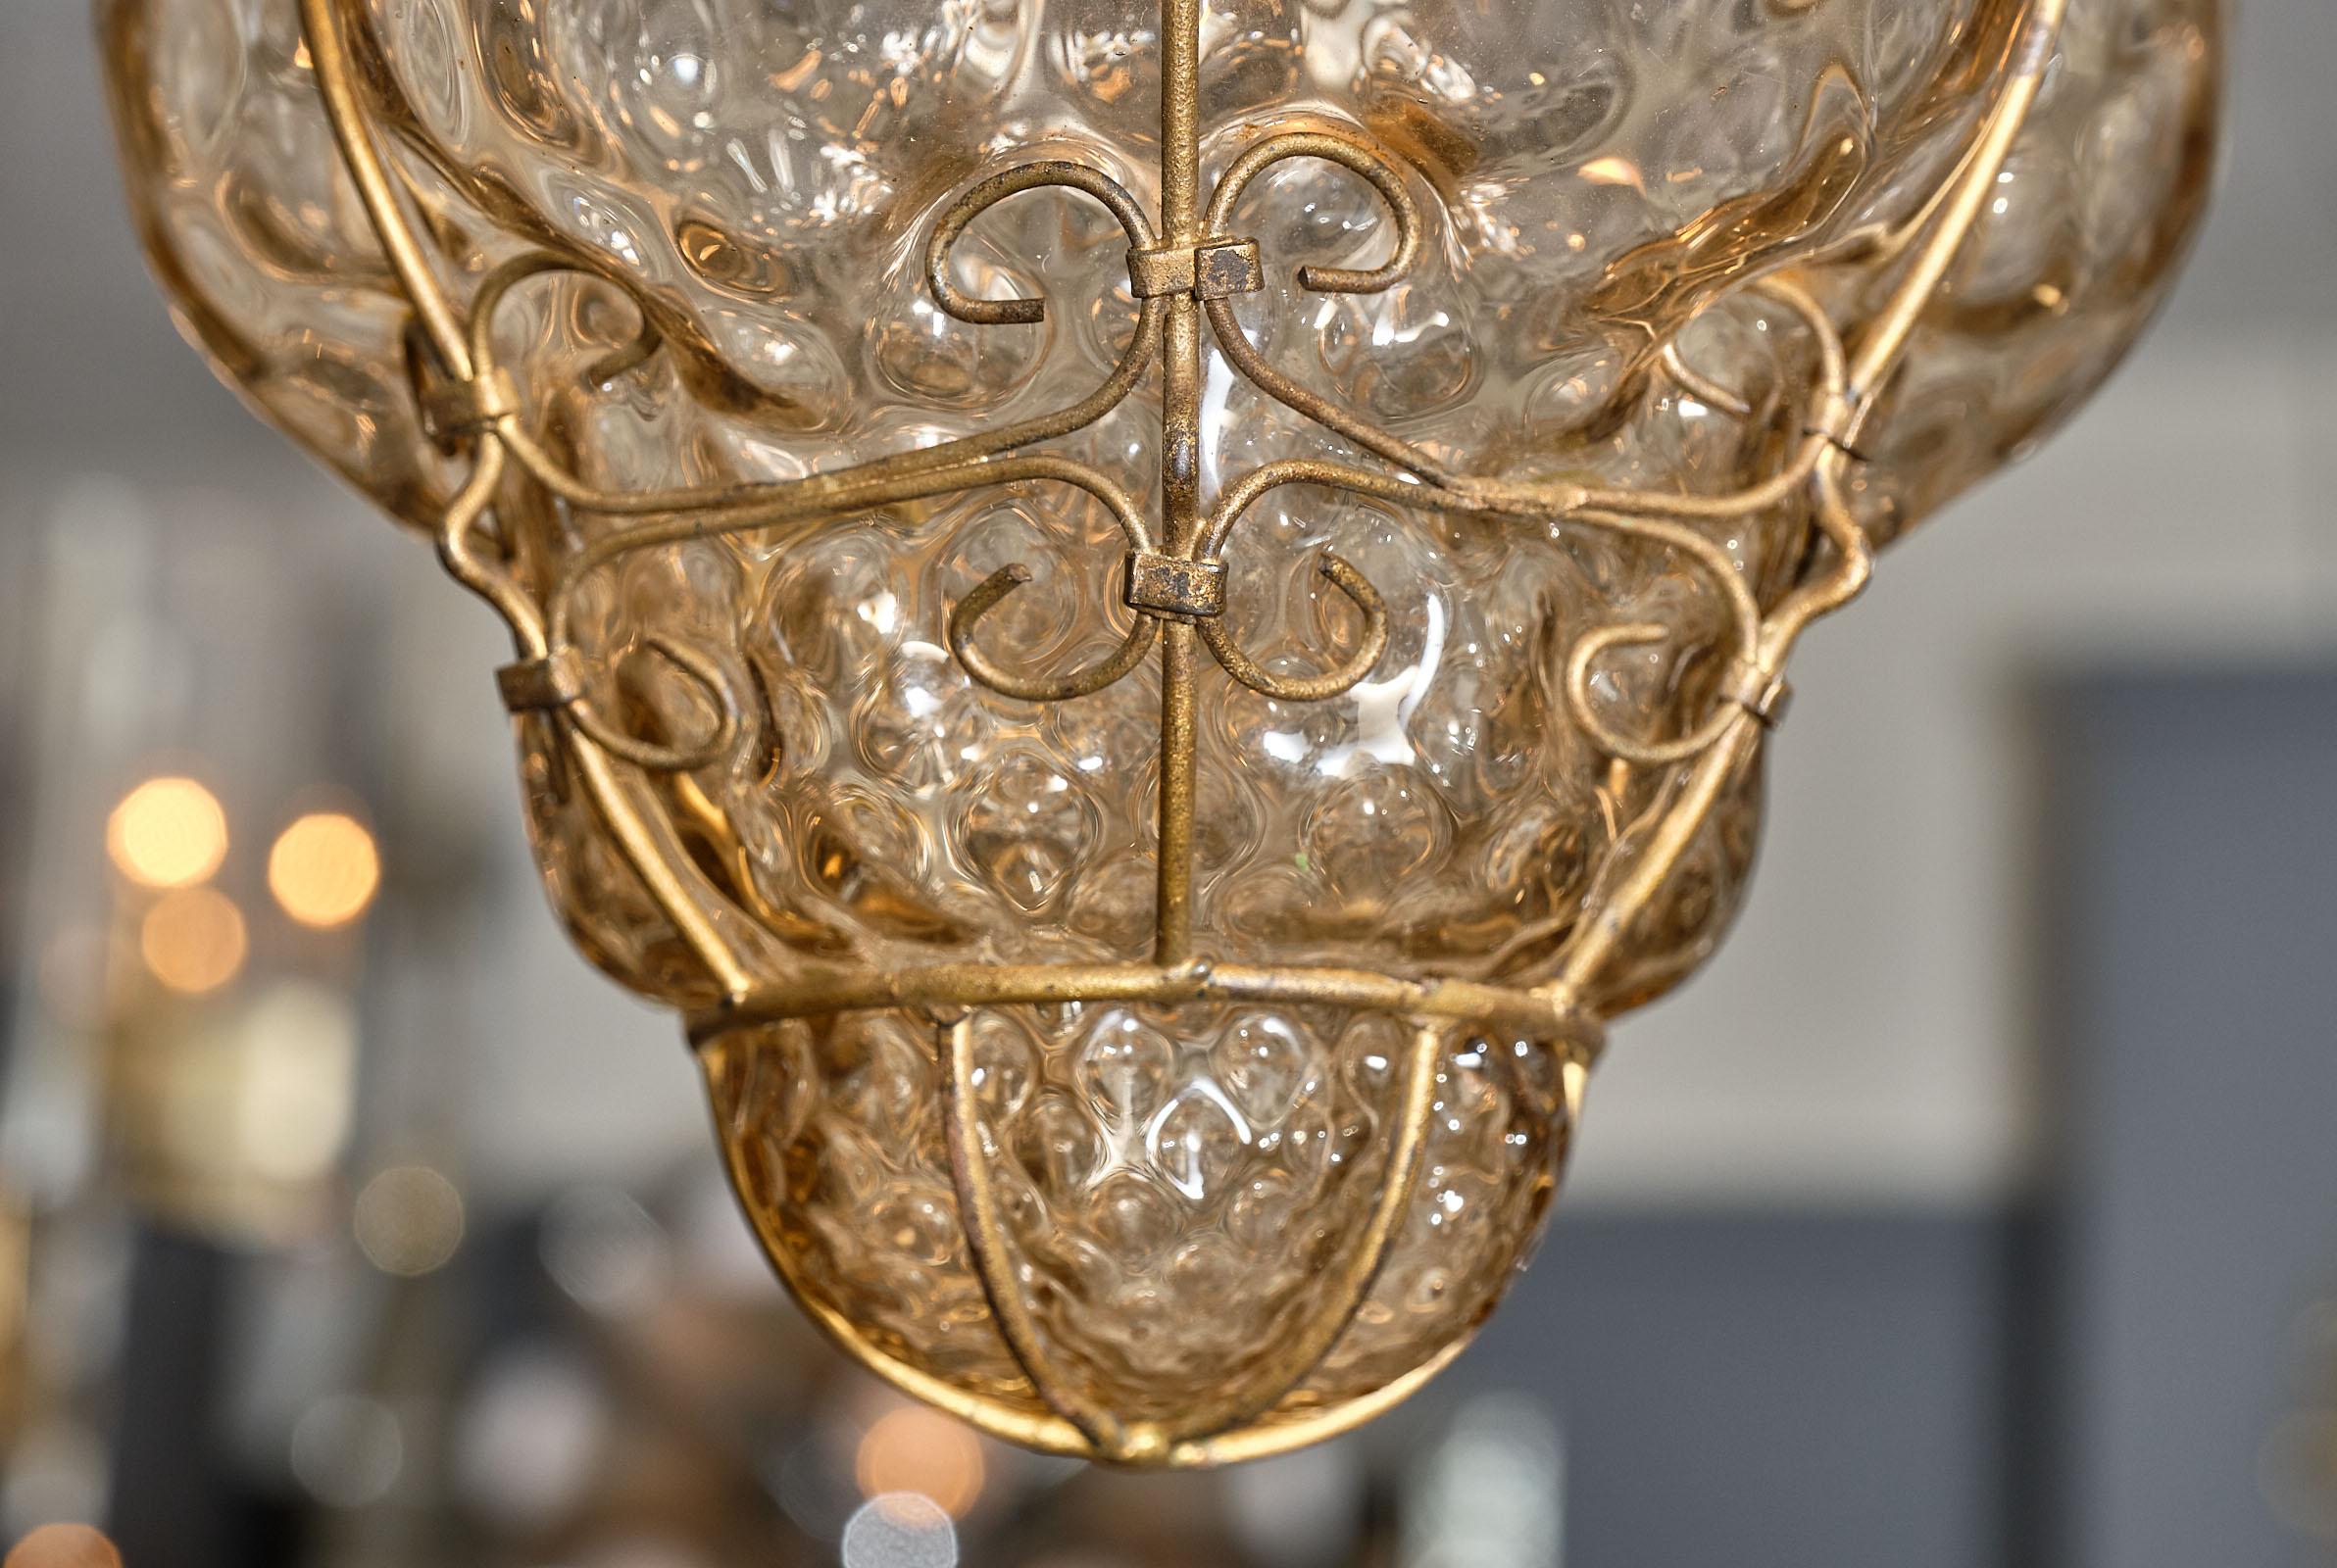 Pair of Vintage Venetian Lanterns 1